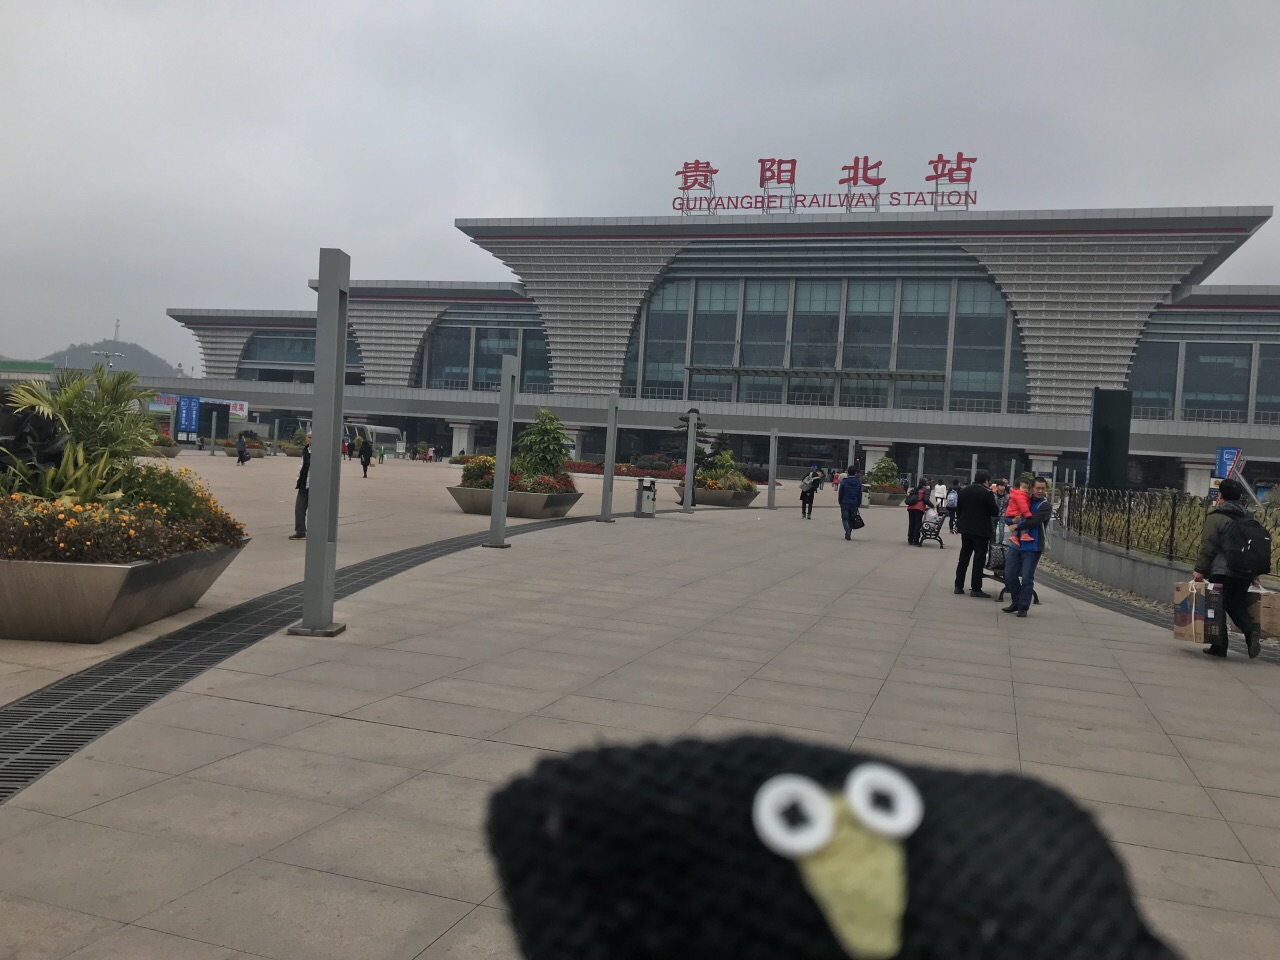 如果按照站台数量来说,贵阳北站是西南地区最大的高铁站,不过就如